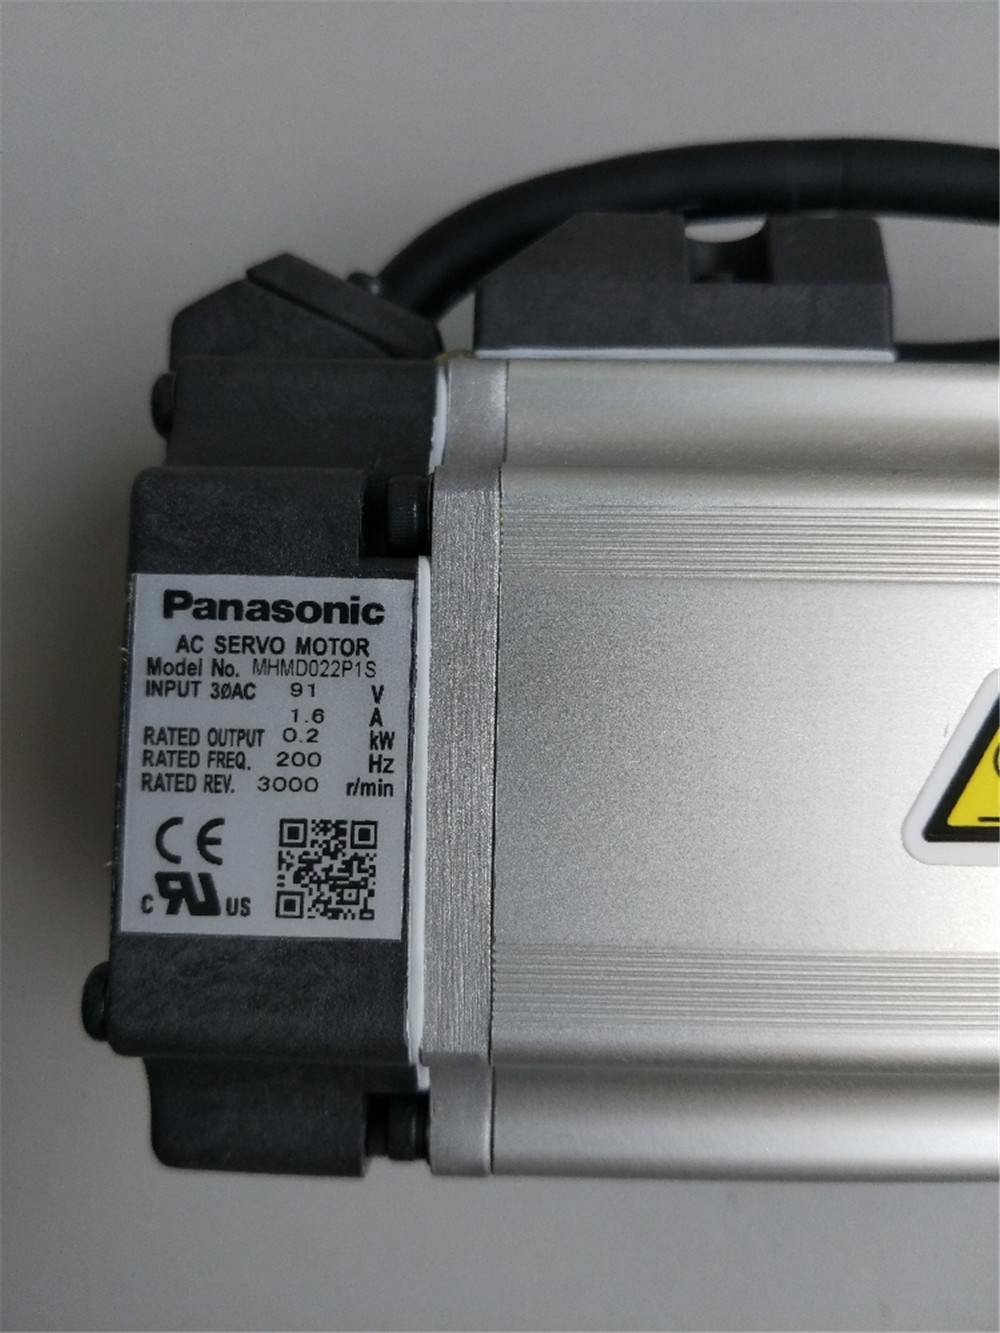 Brand New PANASONIC servo motor MHMD022P1S in box - zum Schließen ins Bild klicken